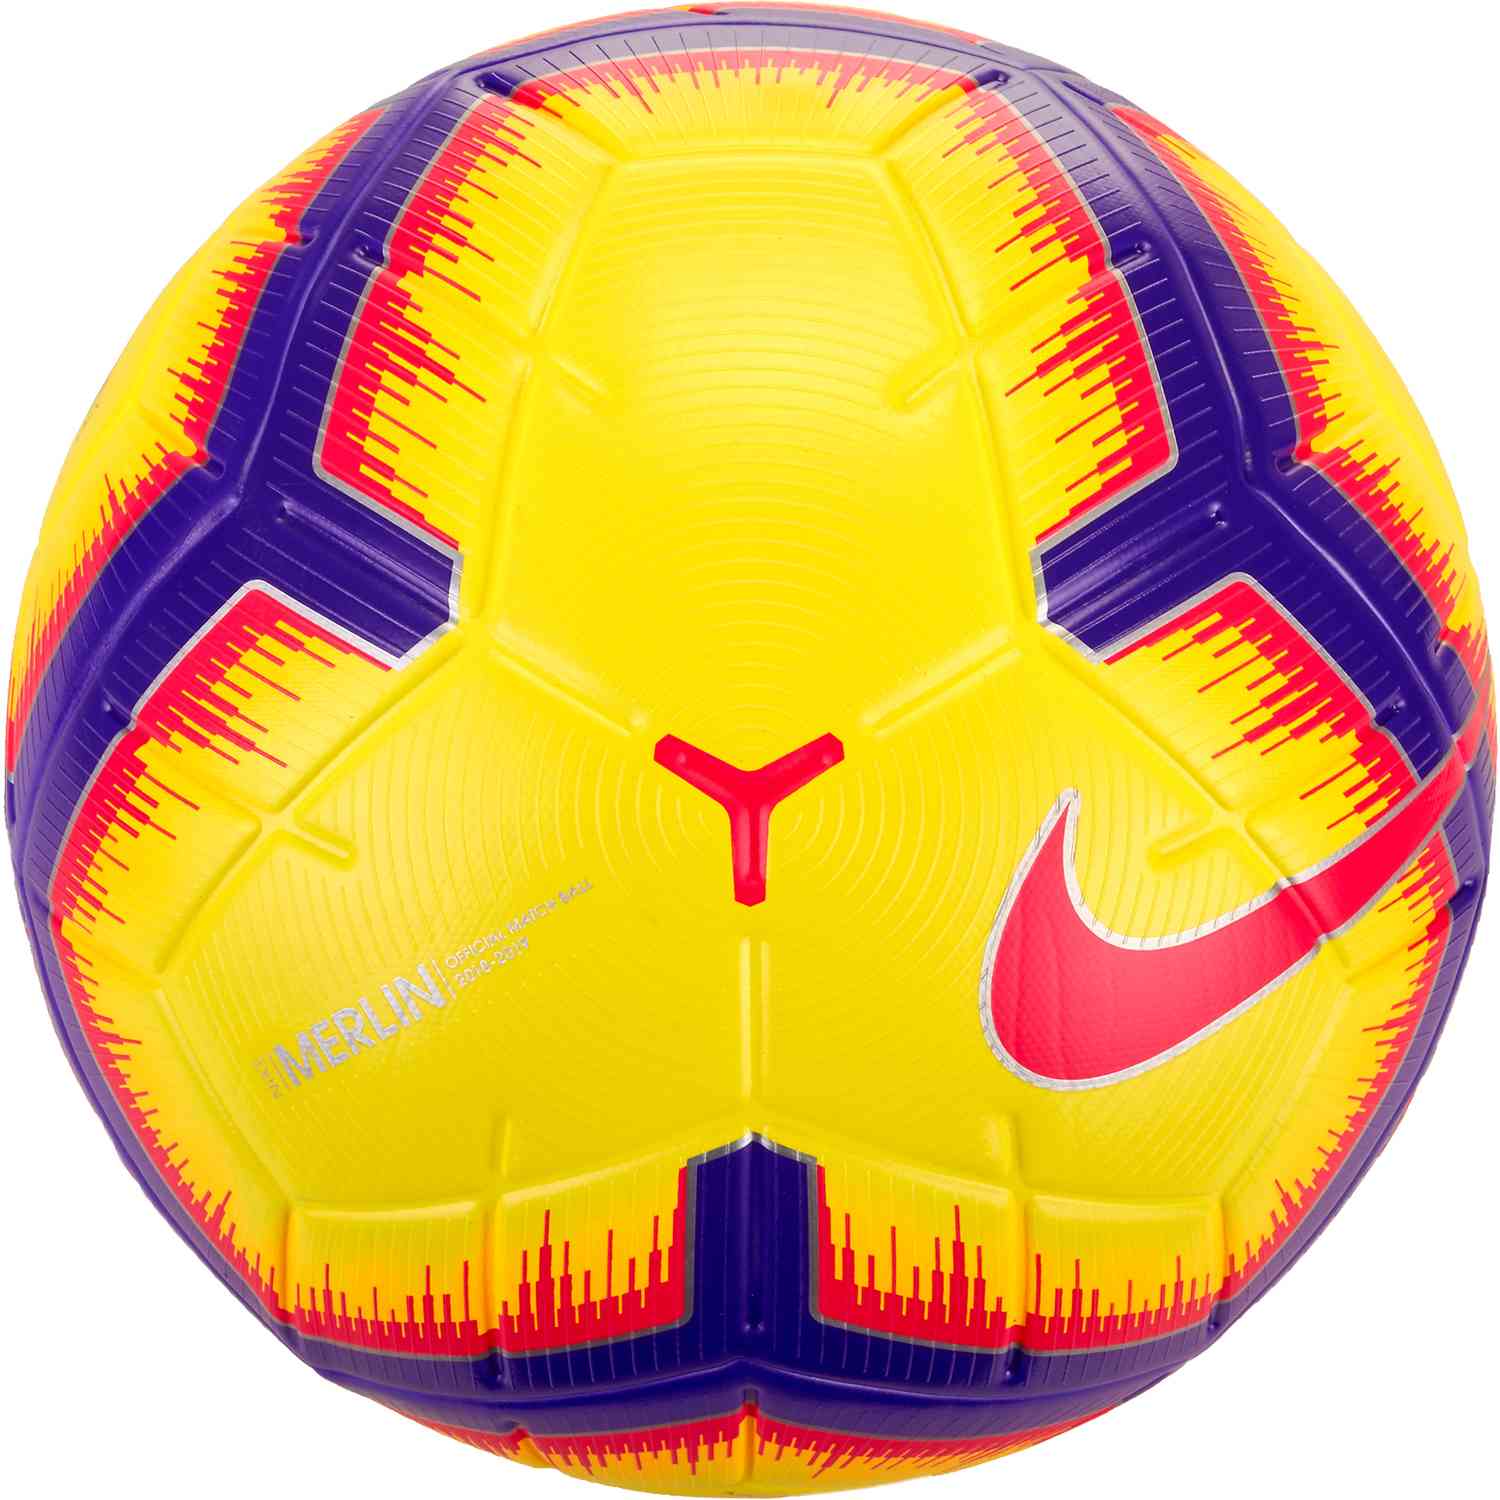 Nike Merlin Match Soccer Ball - Hi-Vis - Soccer Master